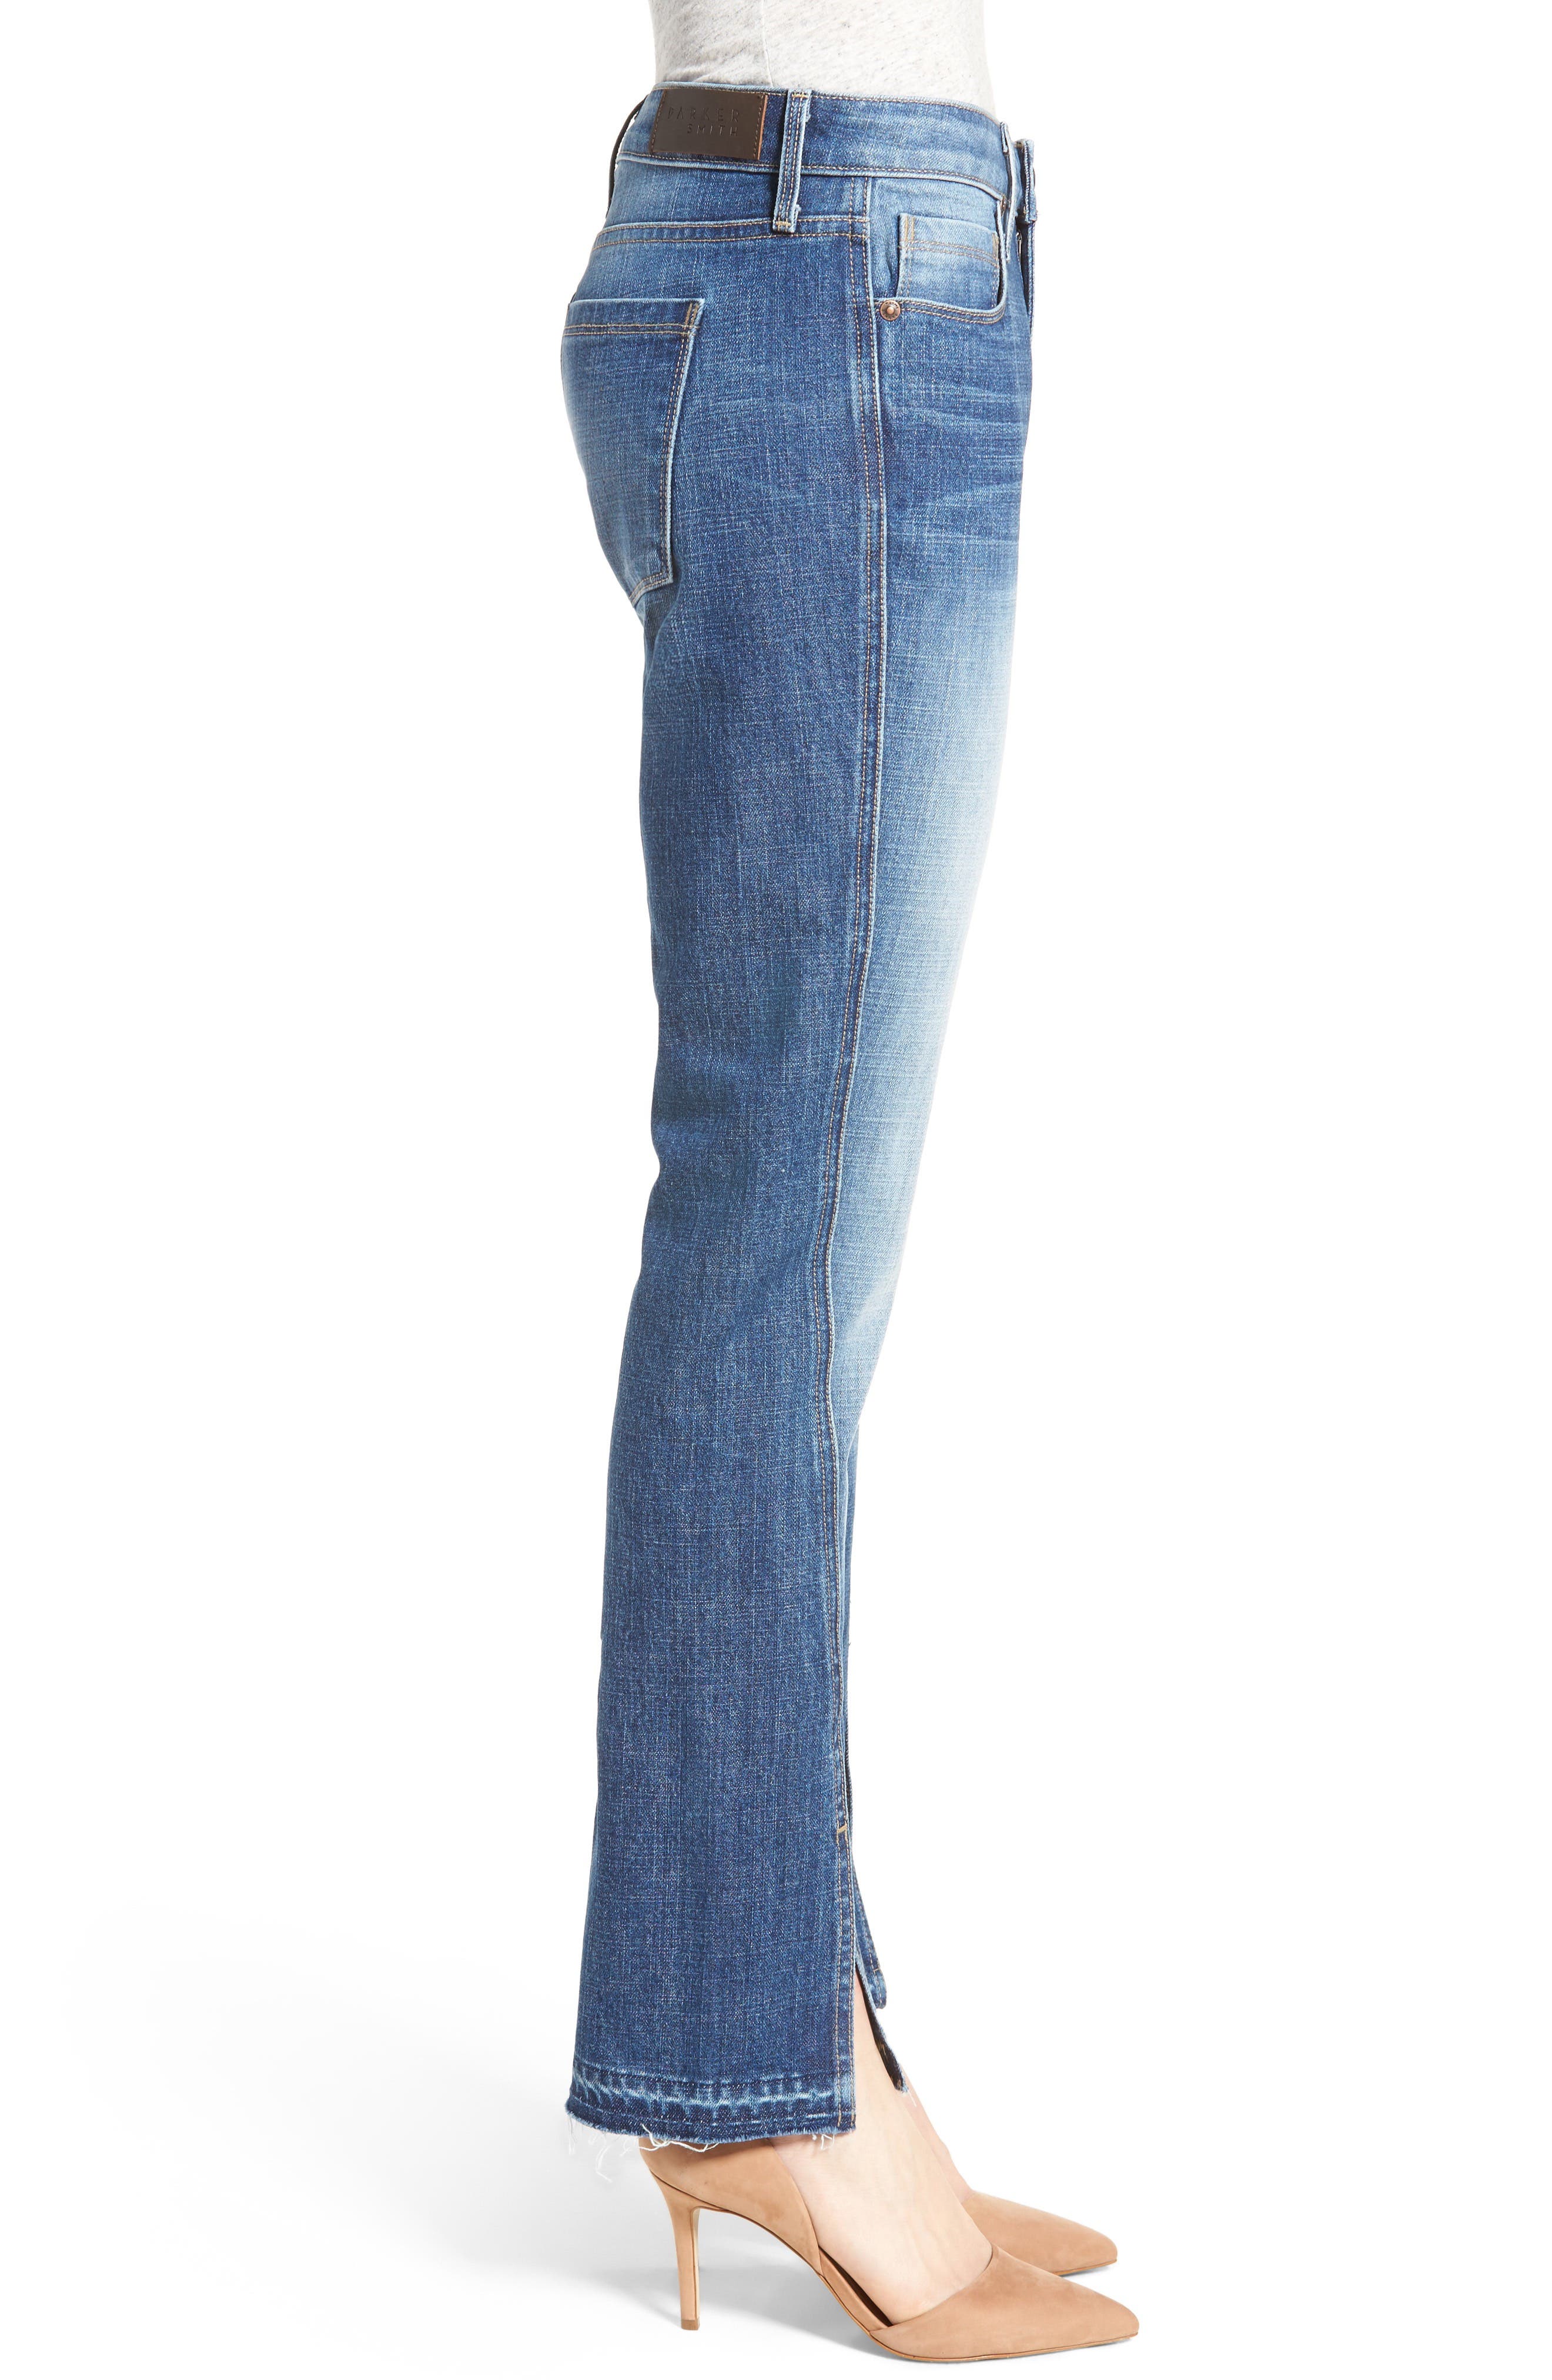 parker smith jeans nordstrom rack